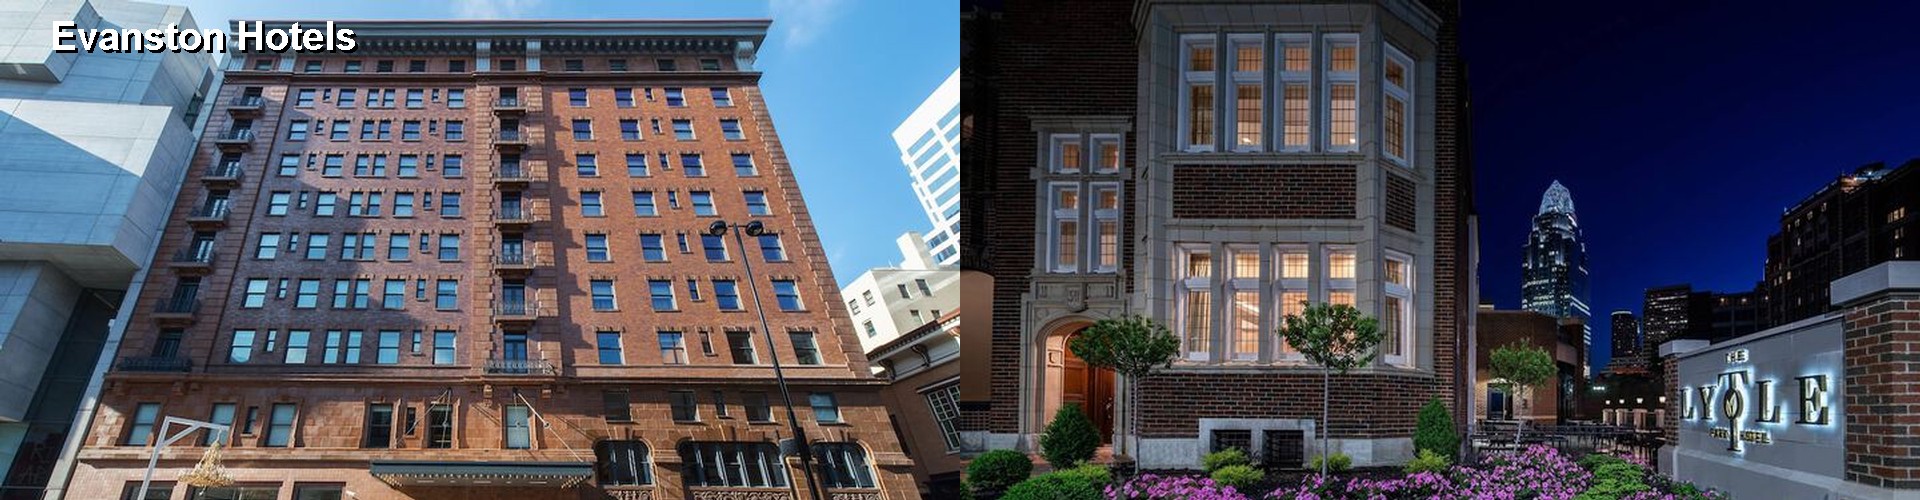 5 Best Hotels near Evanston